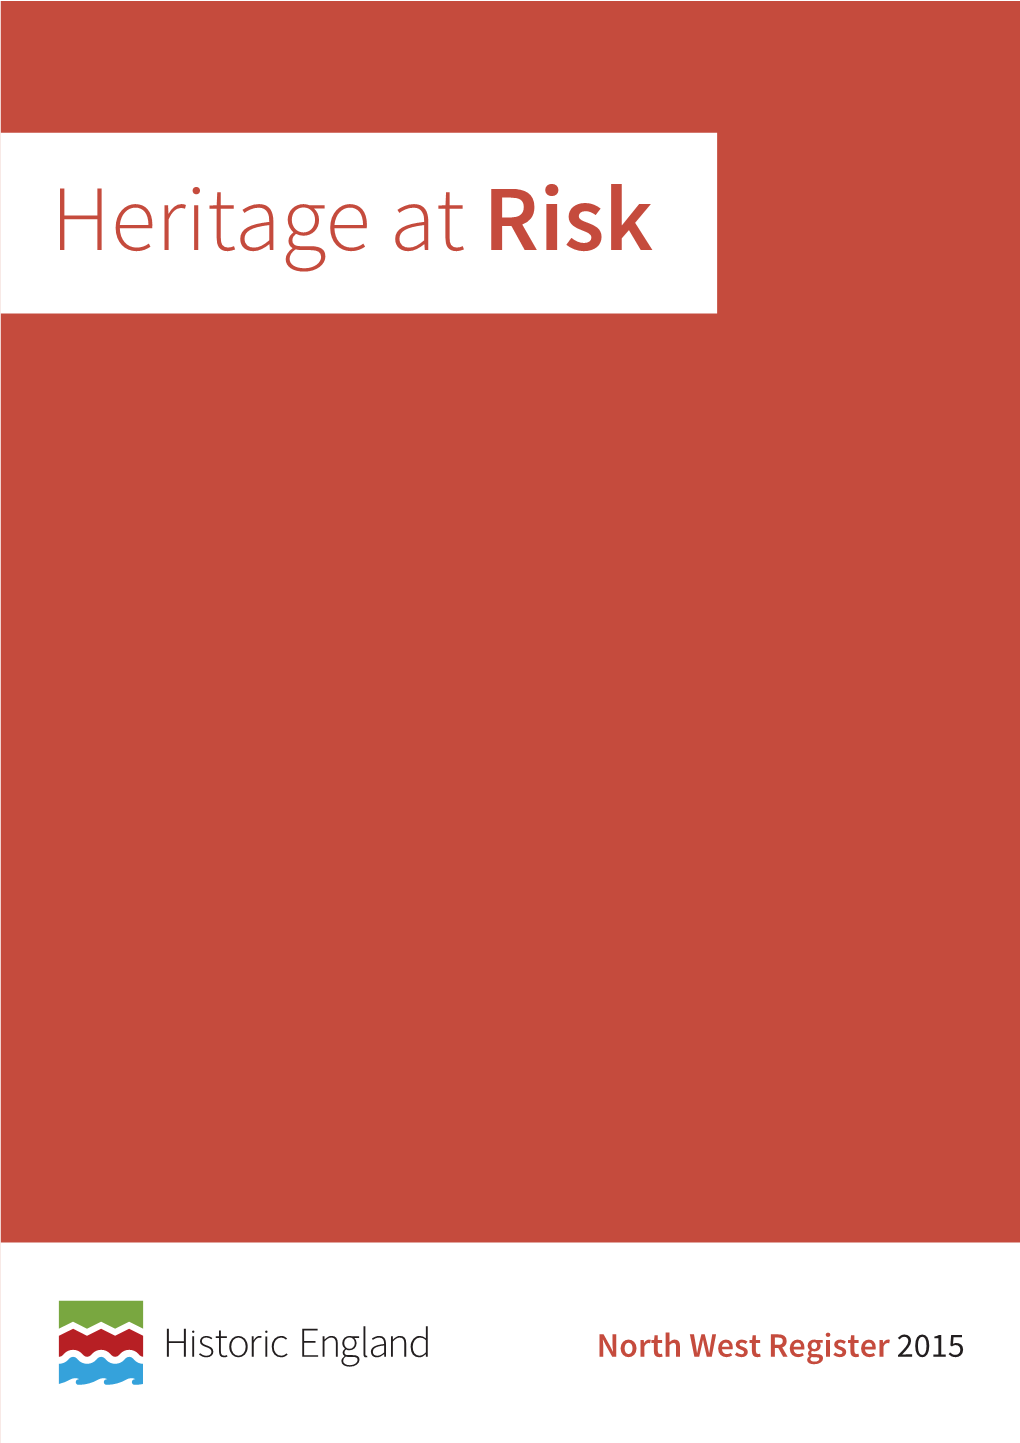 Heritage at Risk Register 2015, North West